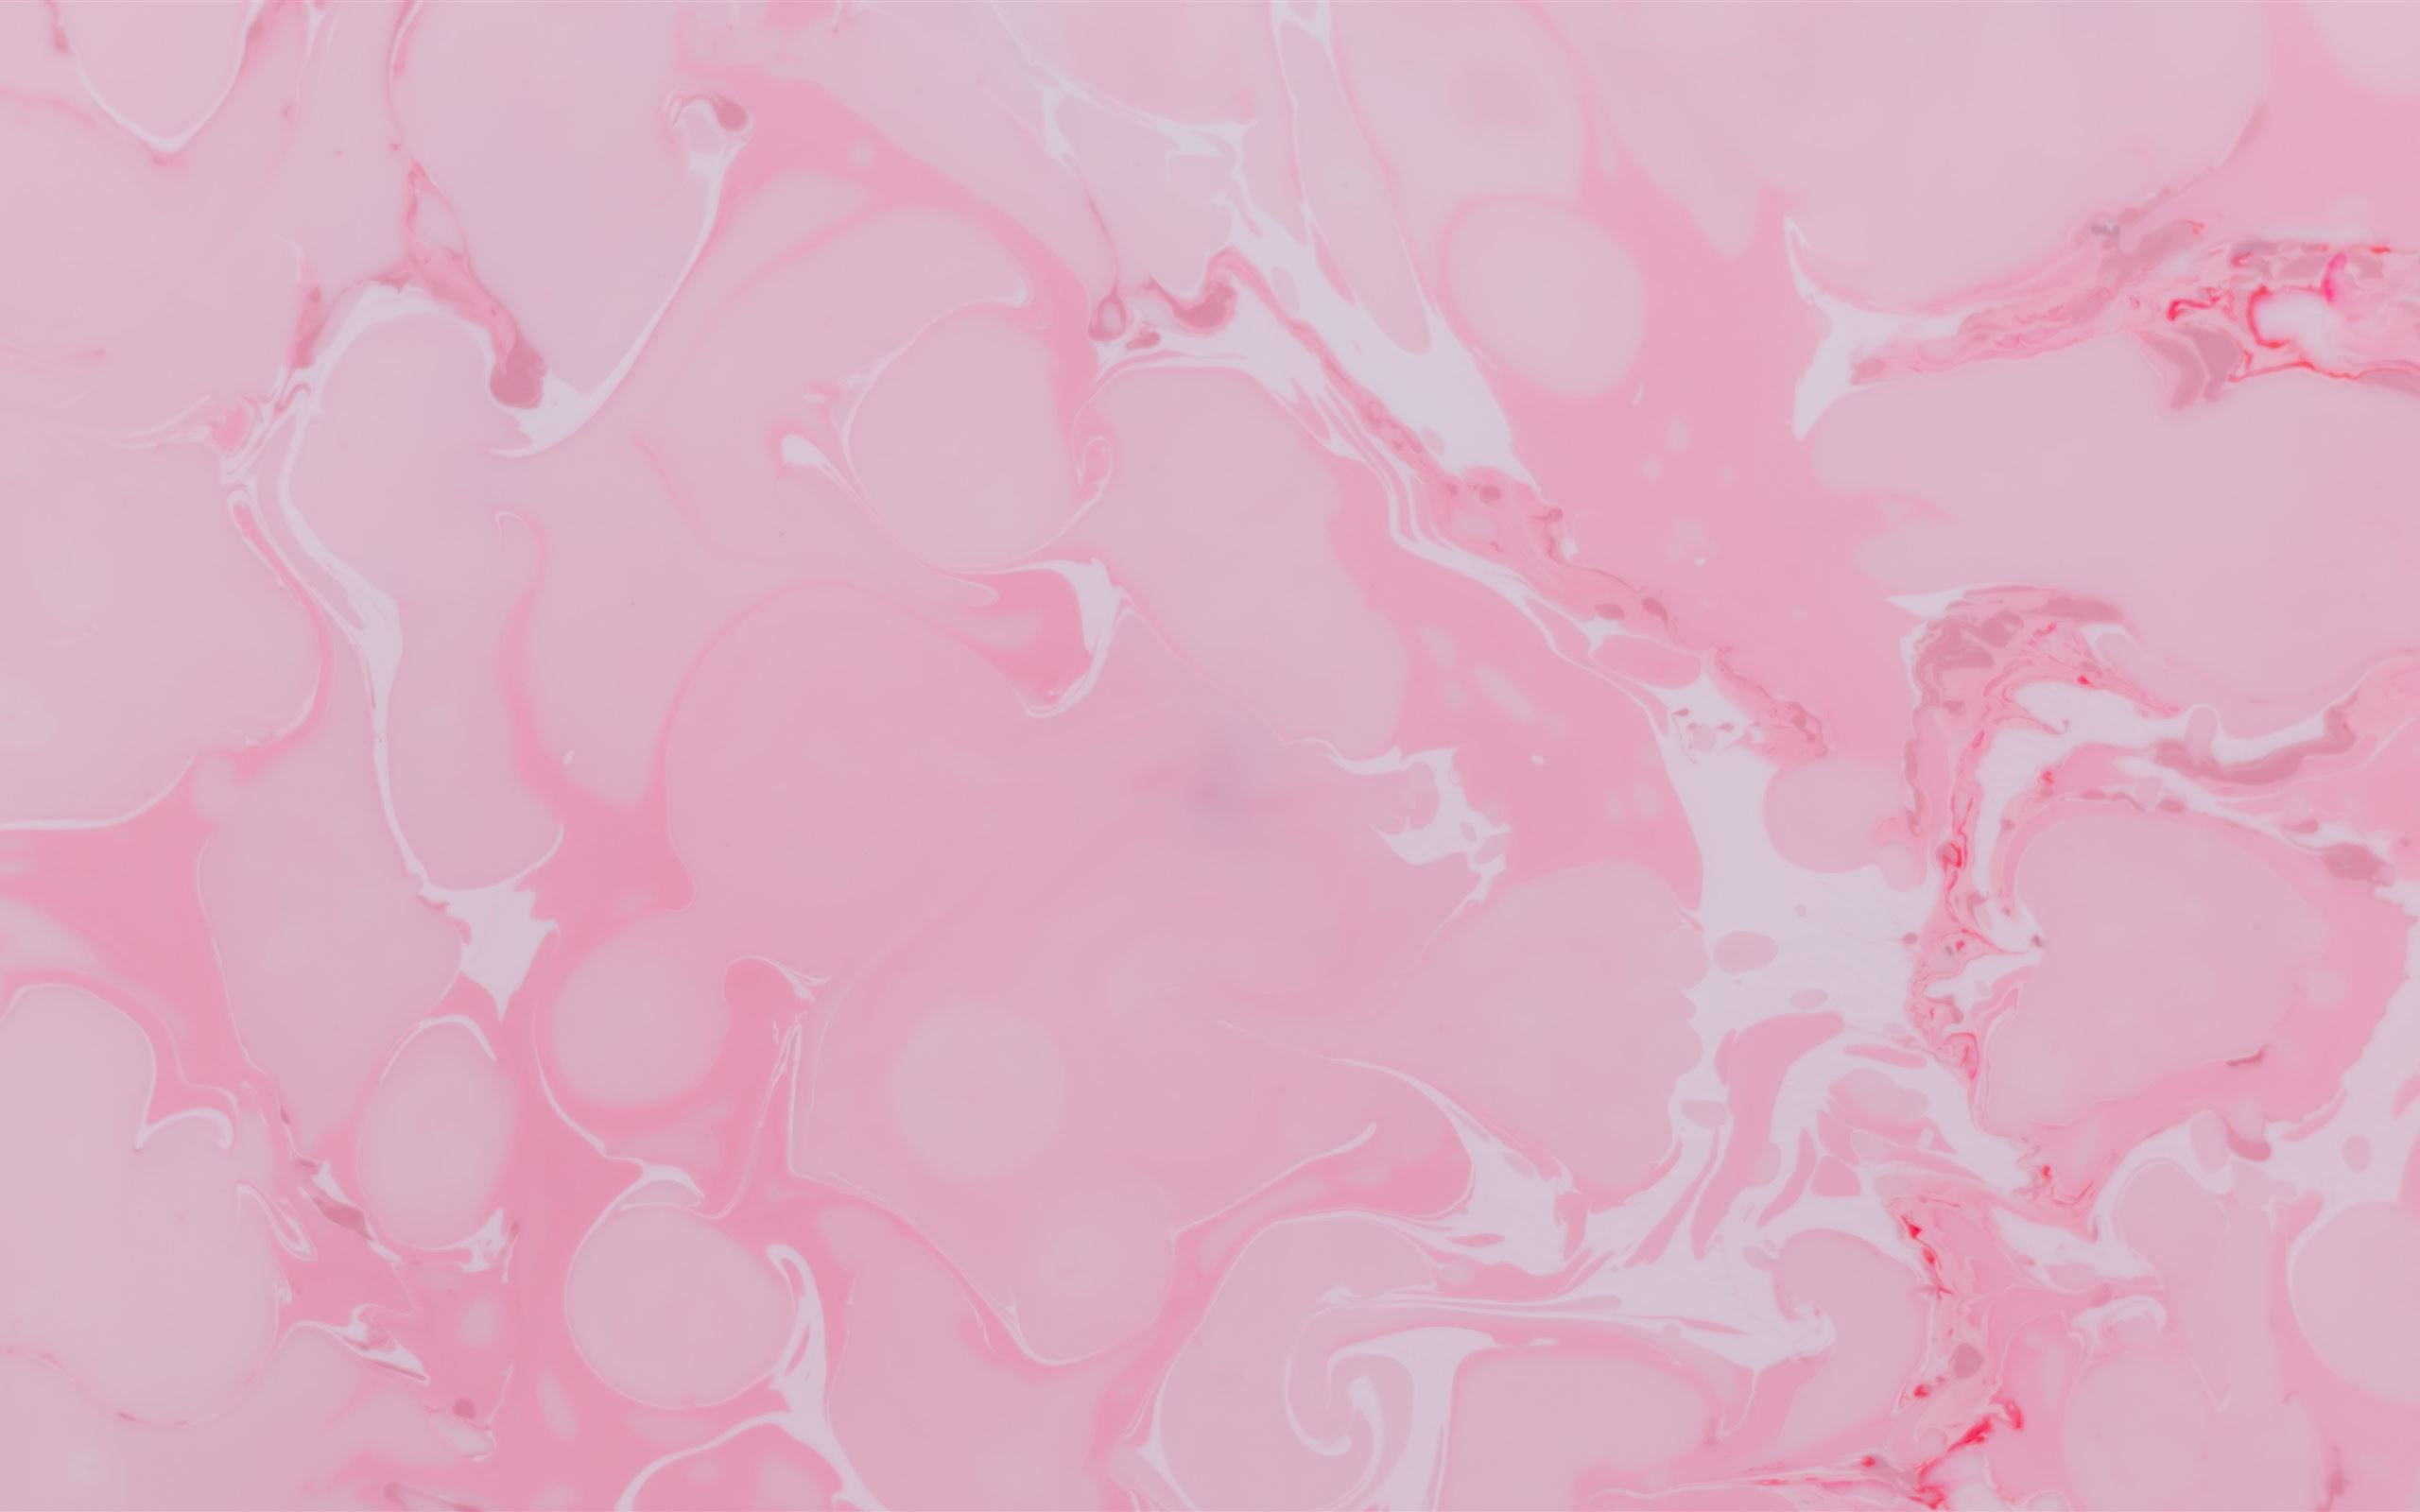 Pink macbook pro HD wallpapers  Pxfuel